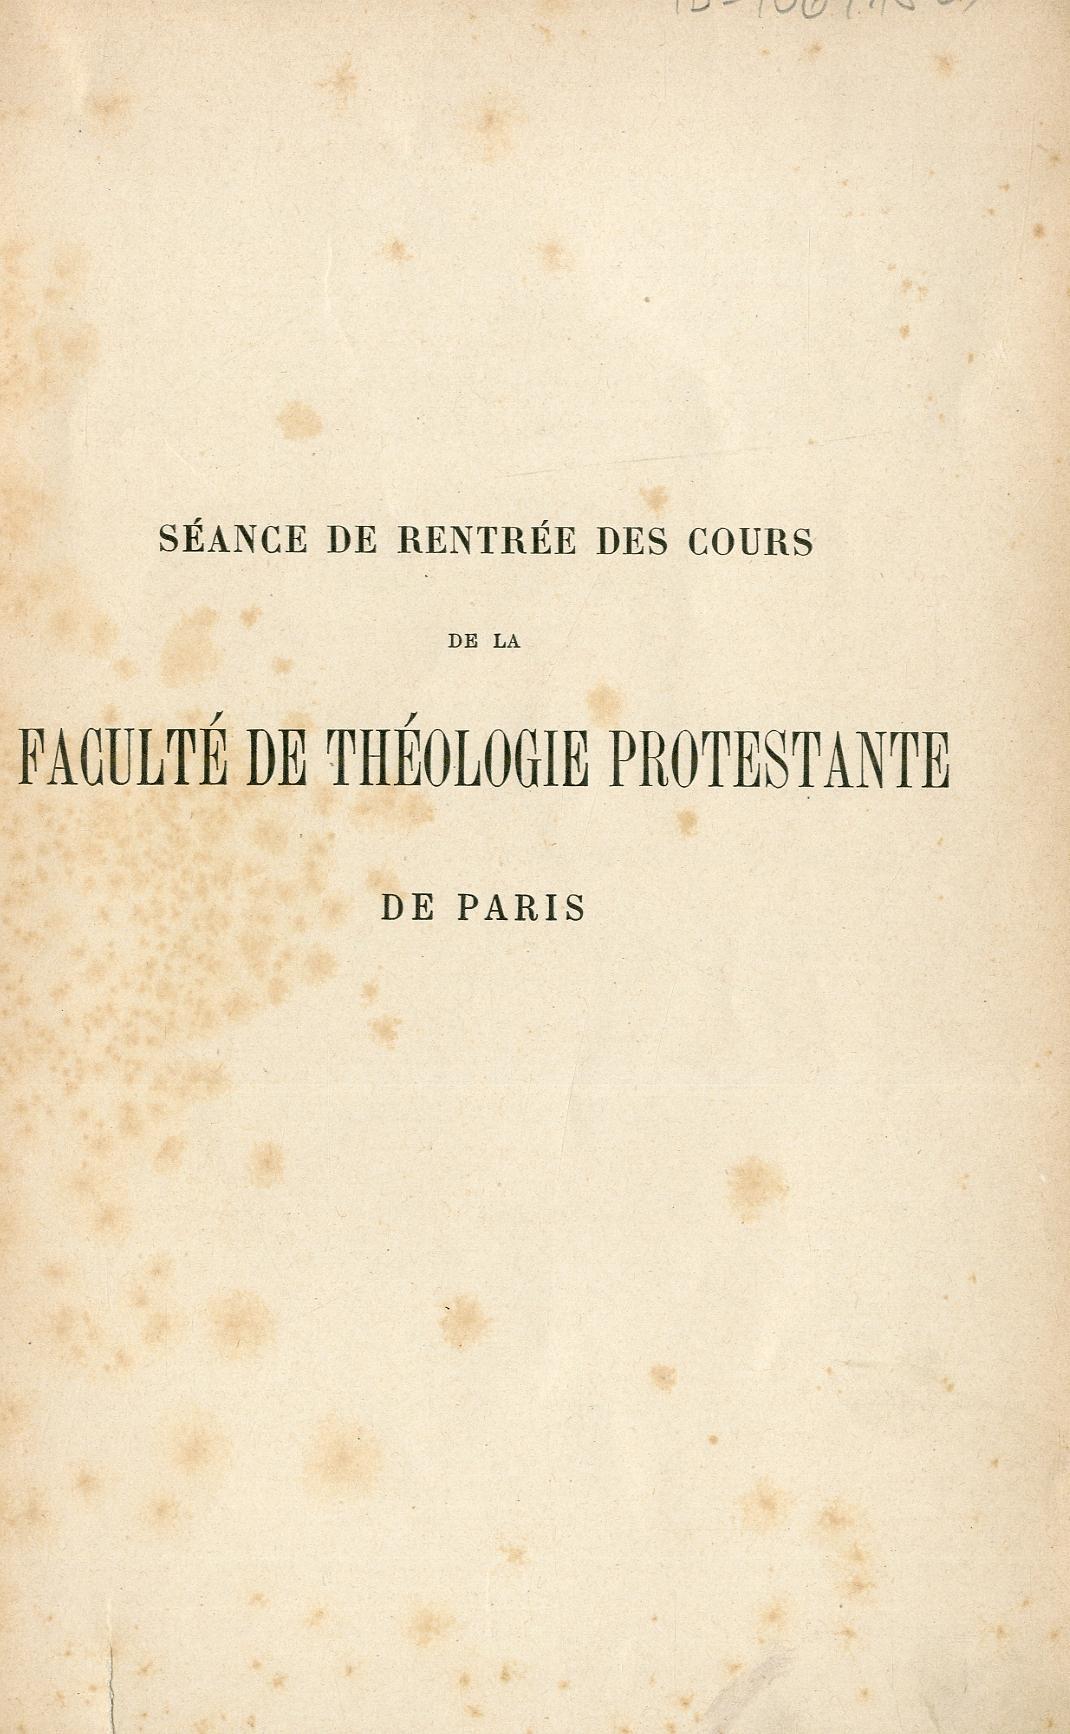 Séance de rentrée des cours de la Faculté de théologie protestante de Paris, le samedi 7 novembre 1903